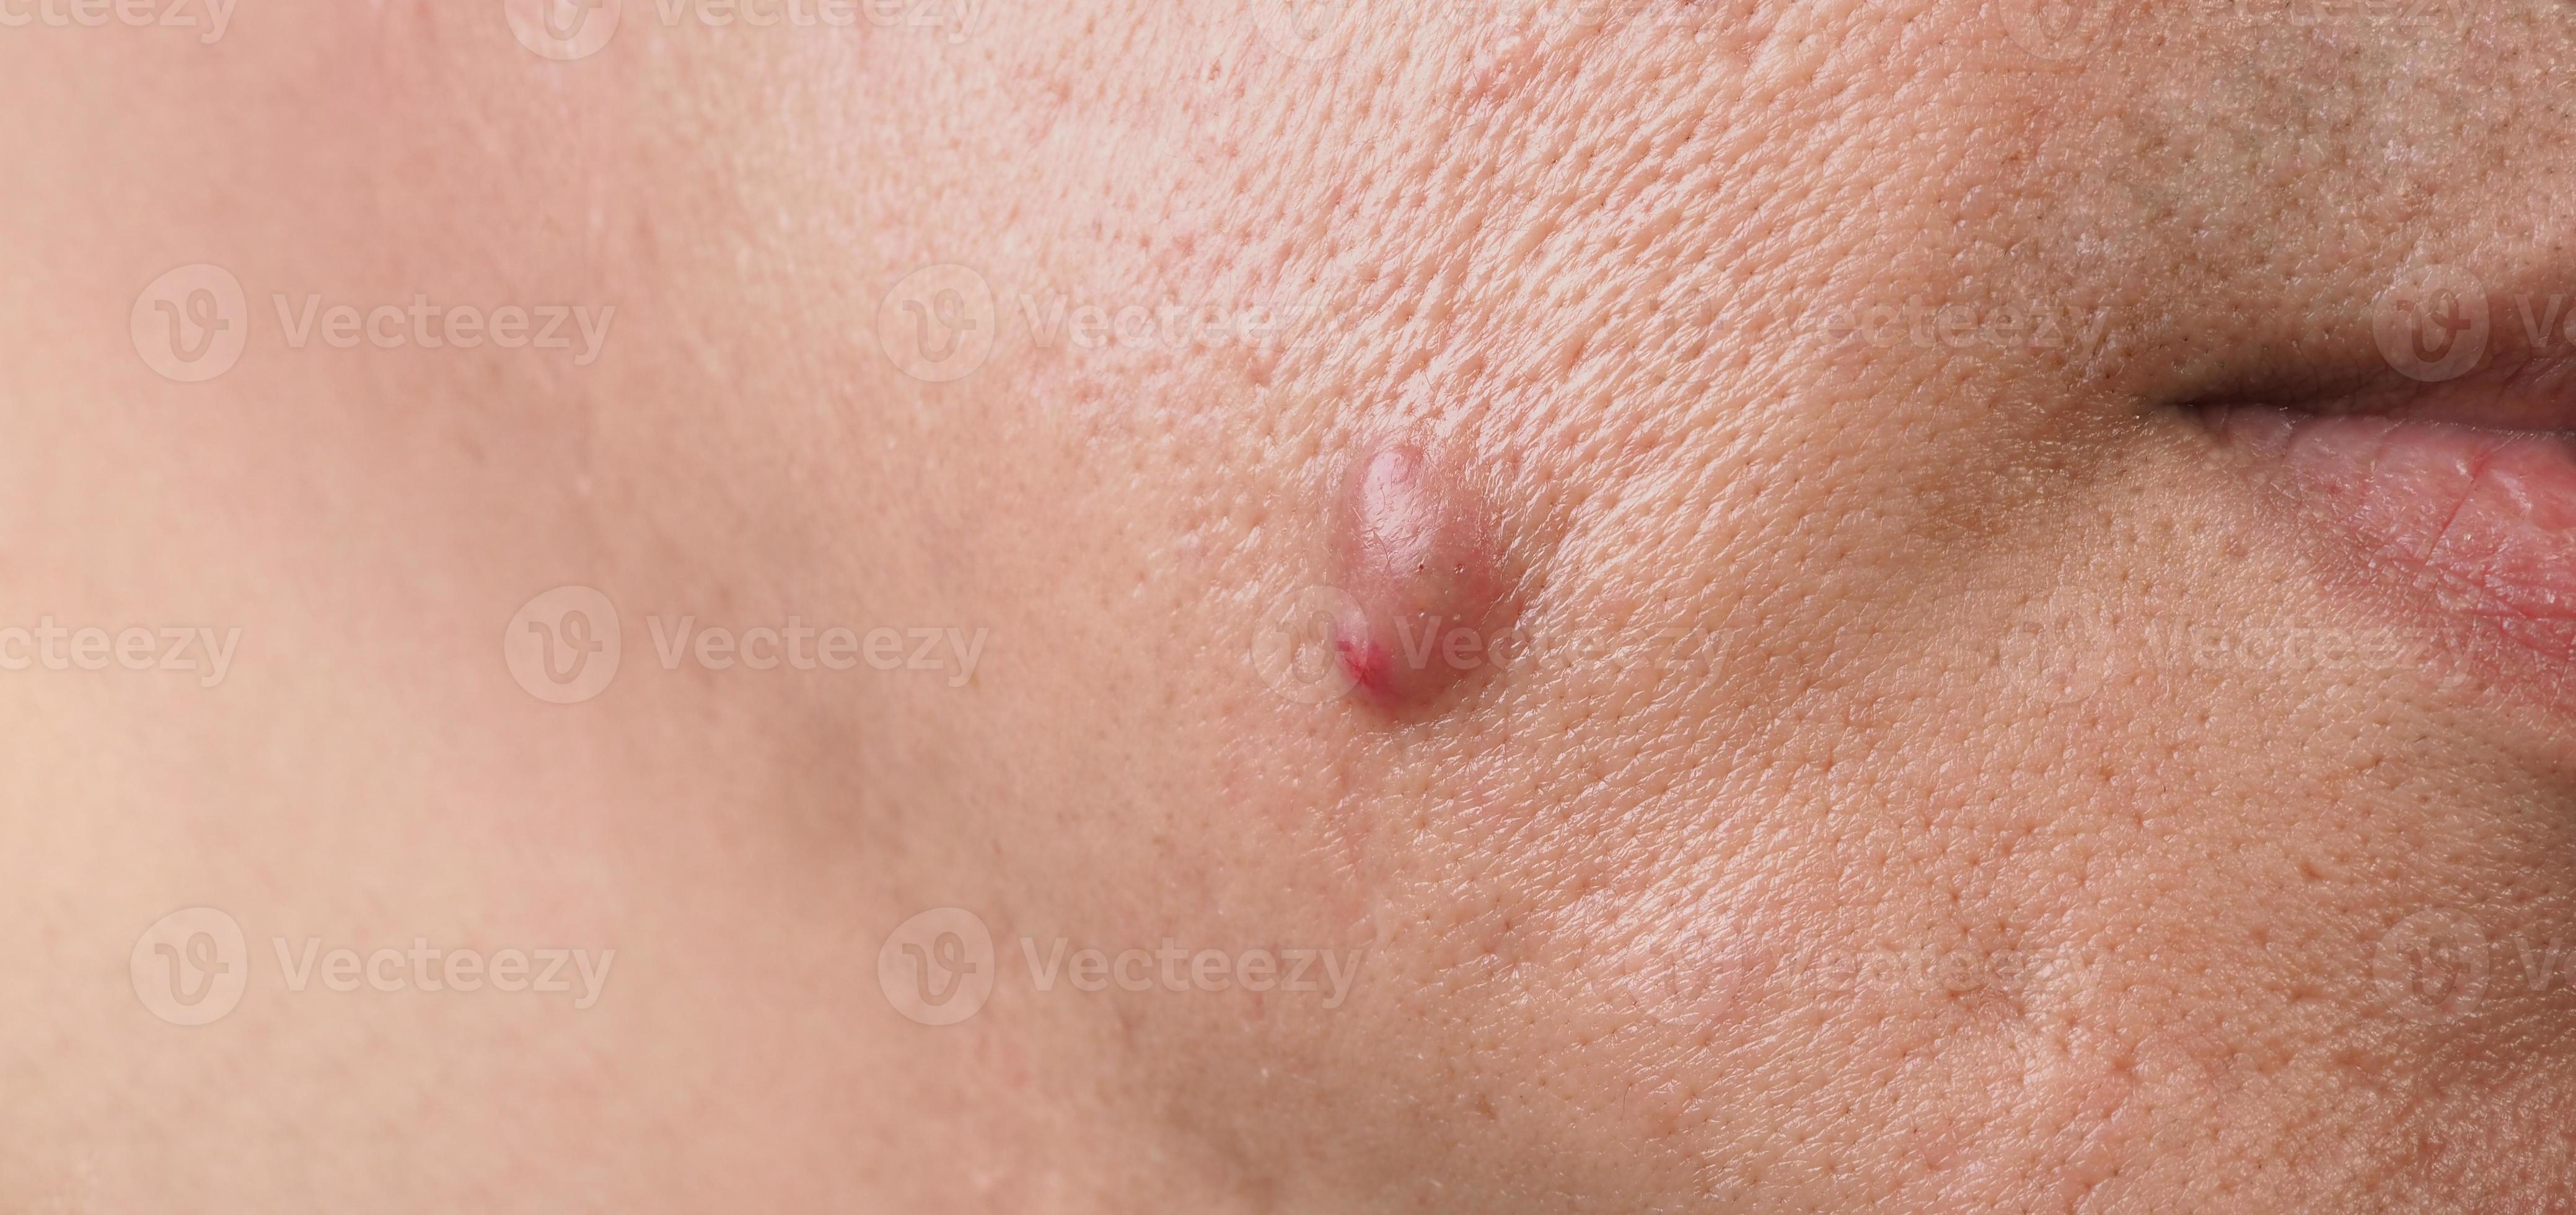 grand abcès de kyste d'acné ou zone enflée d'ulcère dans le tissu ...